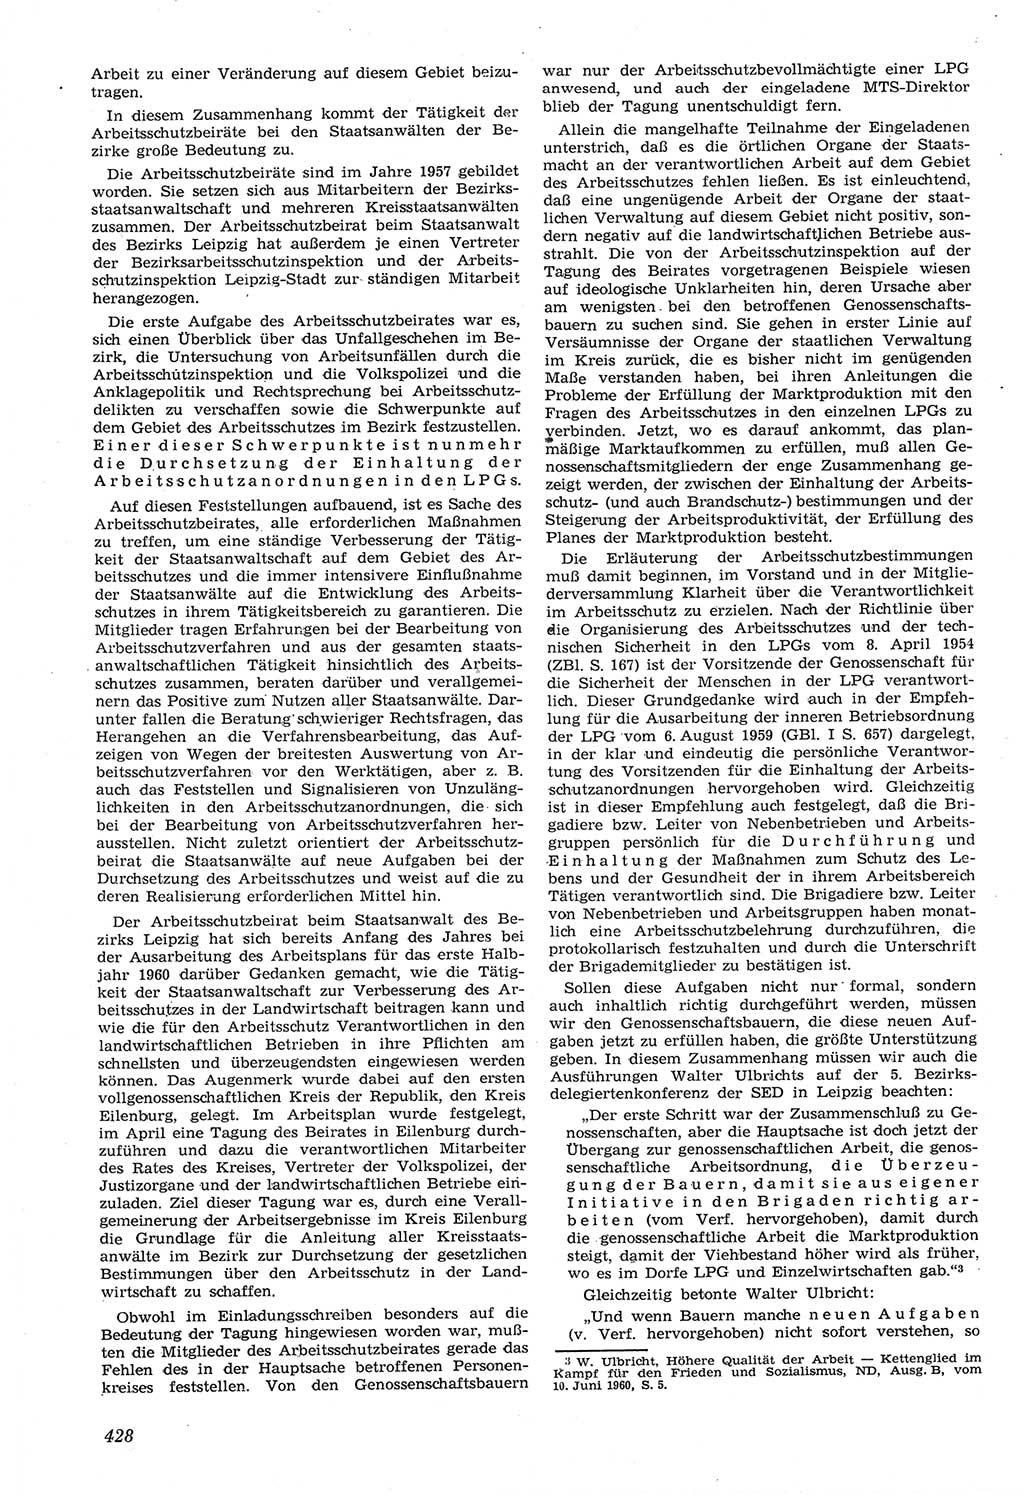 Neue Justiz (NJ), Zeitschrift für Recht und Rechtswissenschaft [Deutsche Demokratische Republik (DDR)], 14. Jahrgang 1960, Seite 428 (NJ DDR 1960, S. 428)